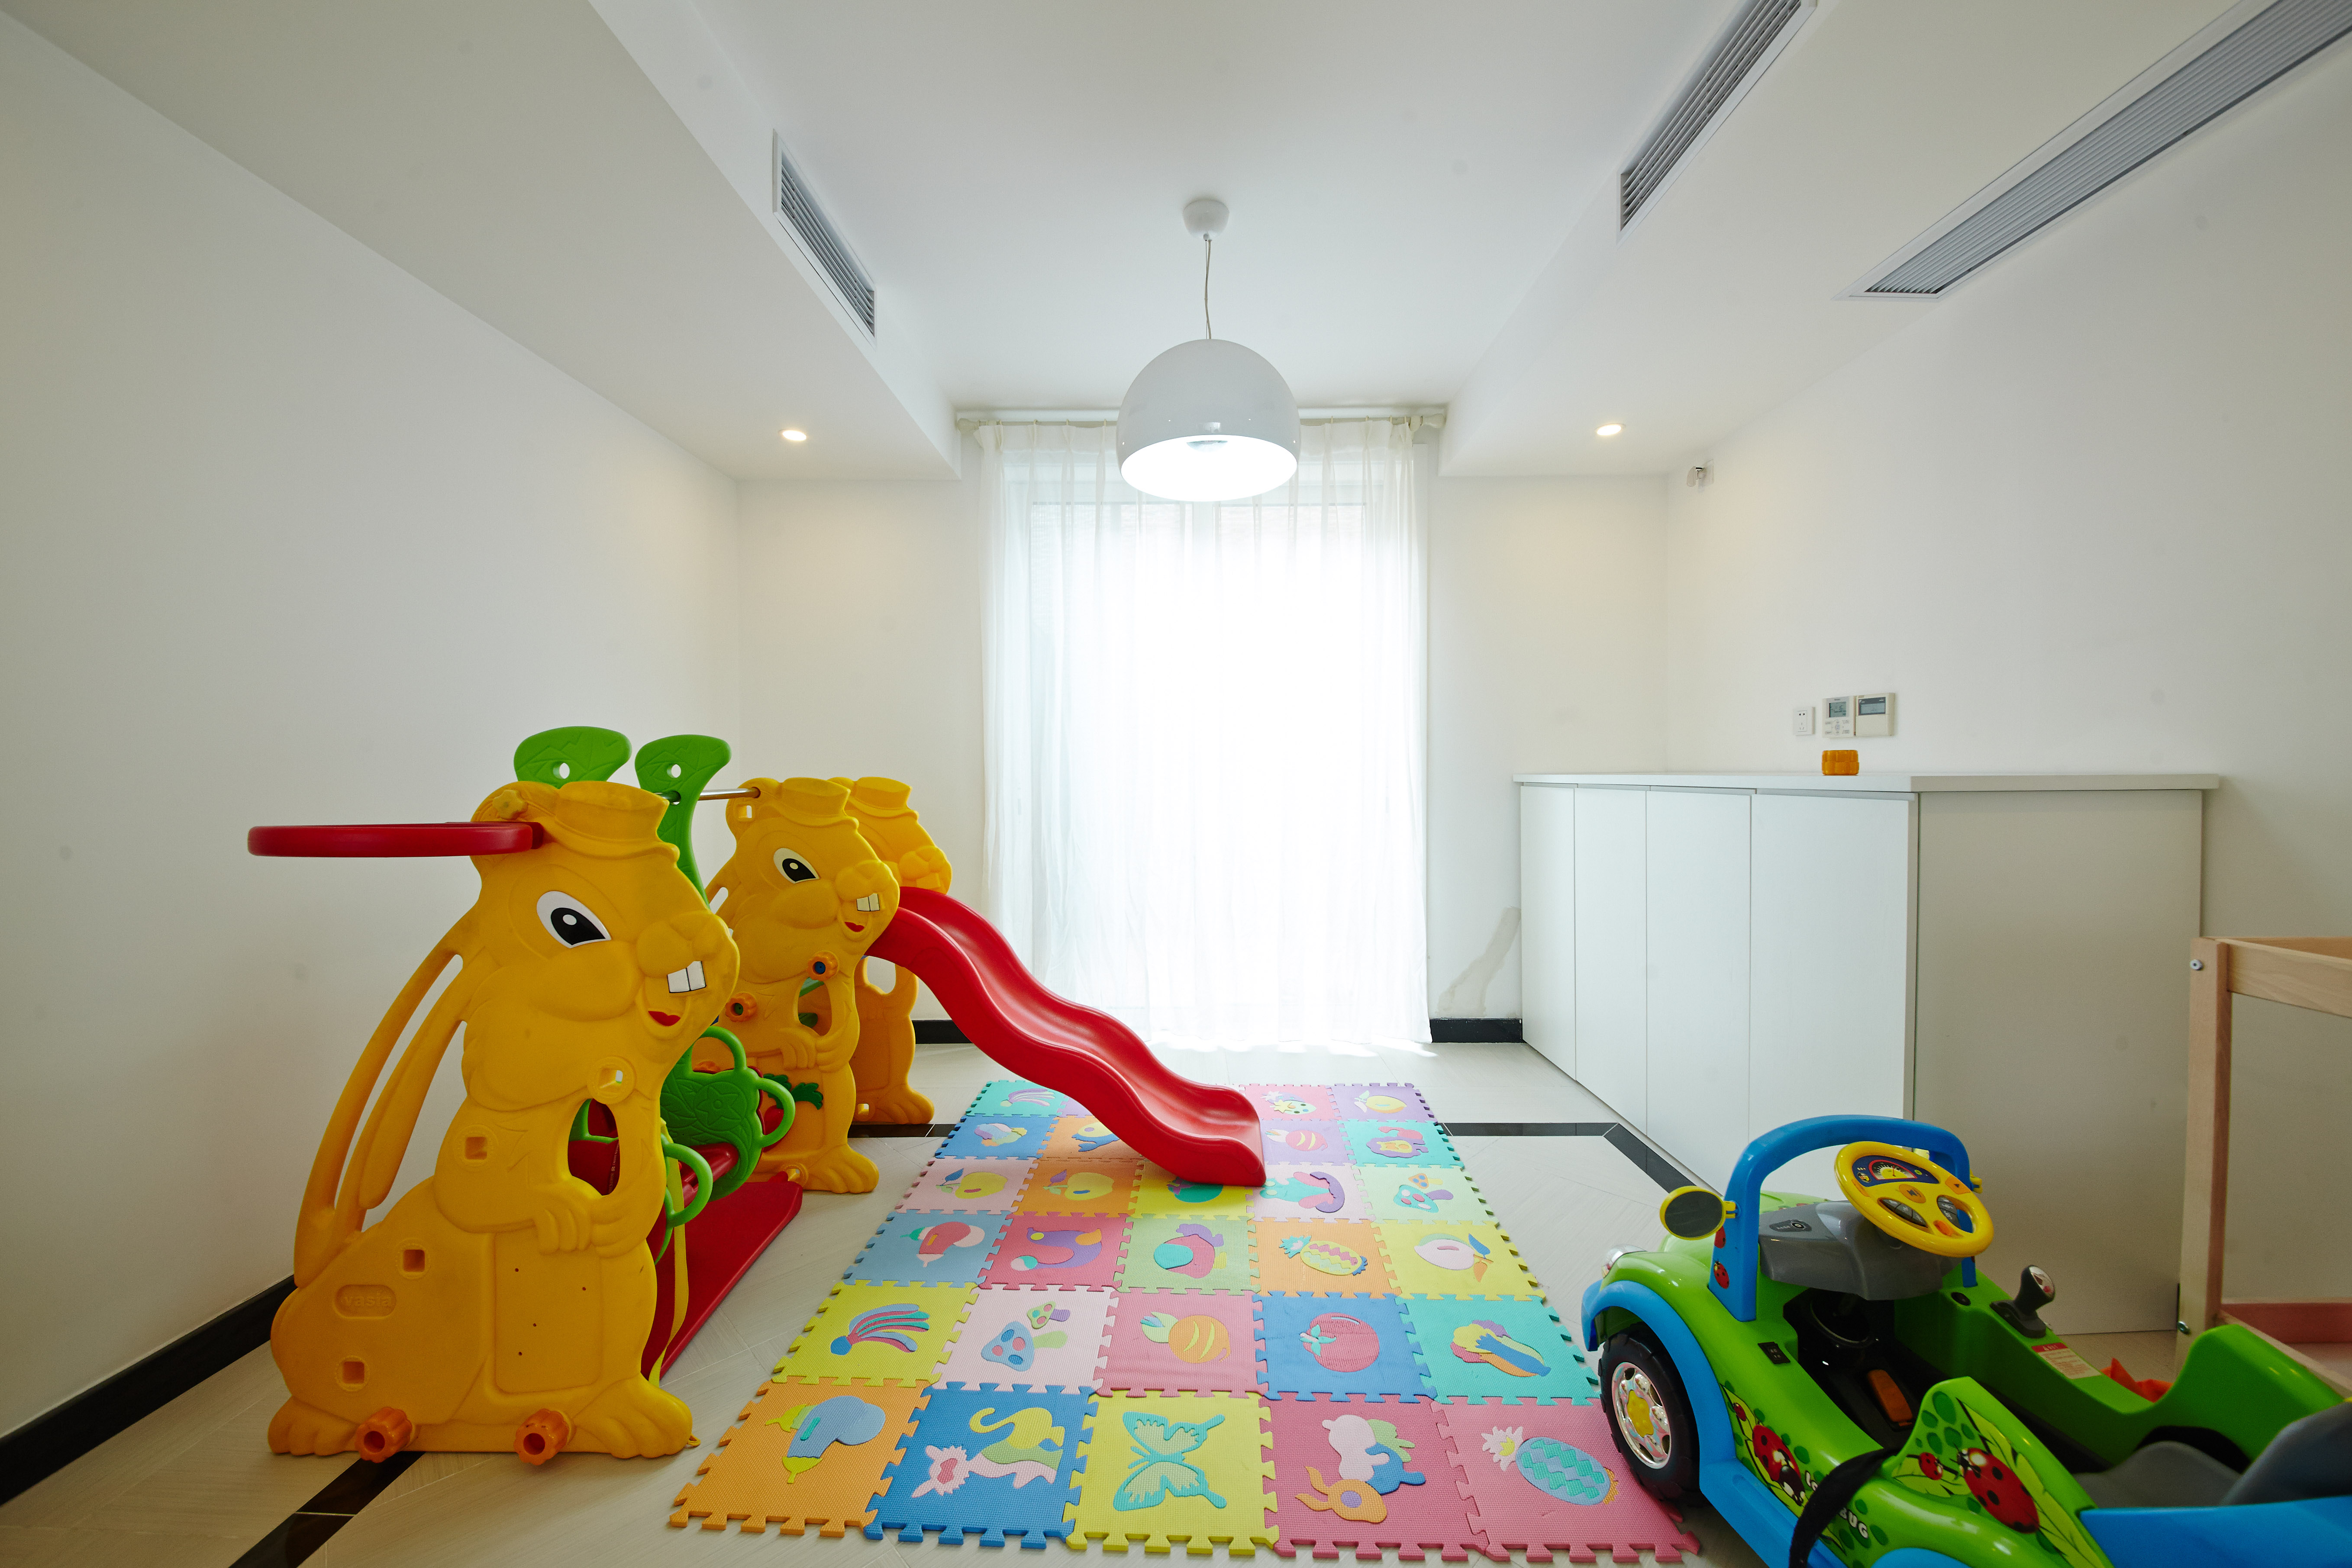 简洁的空间配以丰富的儿童玩具，让孩子在家中拥有自己独立的娱乐天地，给孩子一个快乐的童年。
